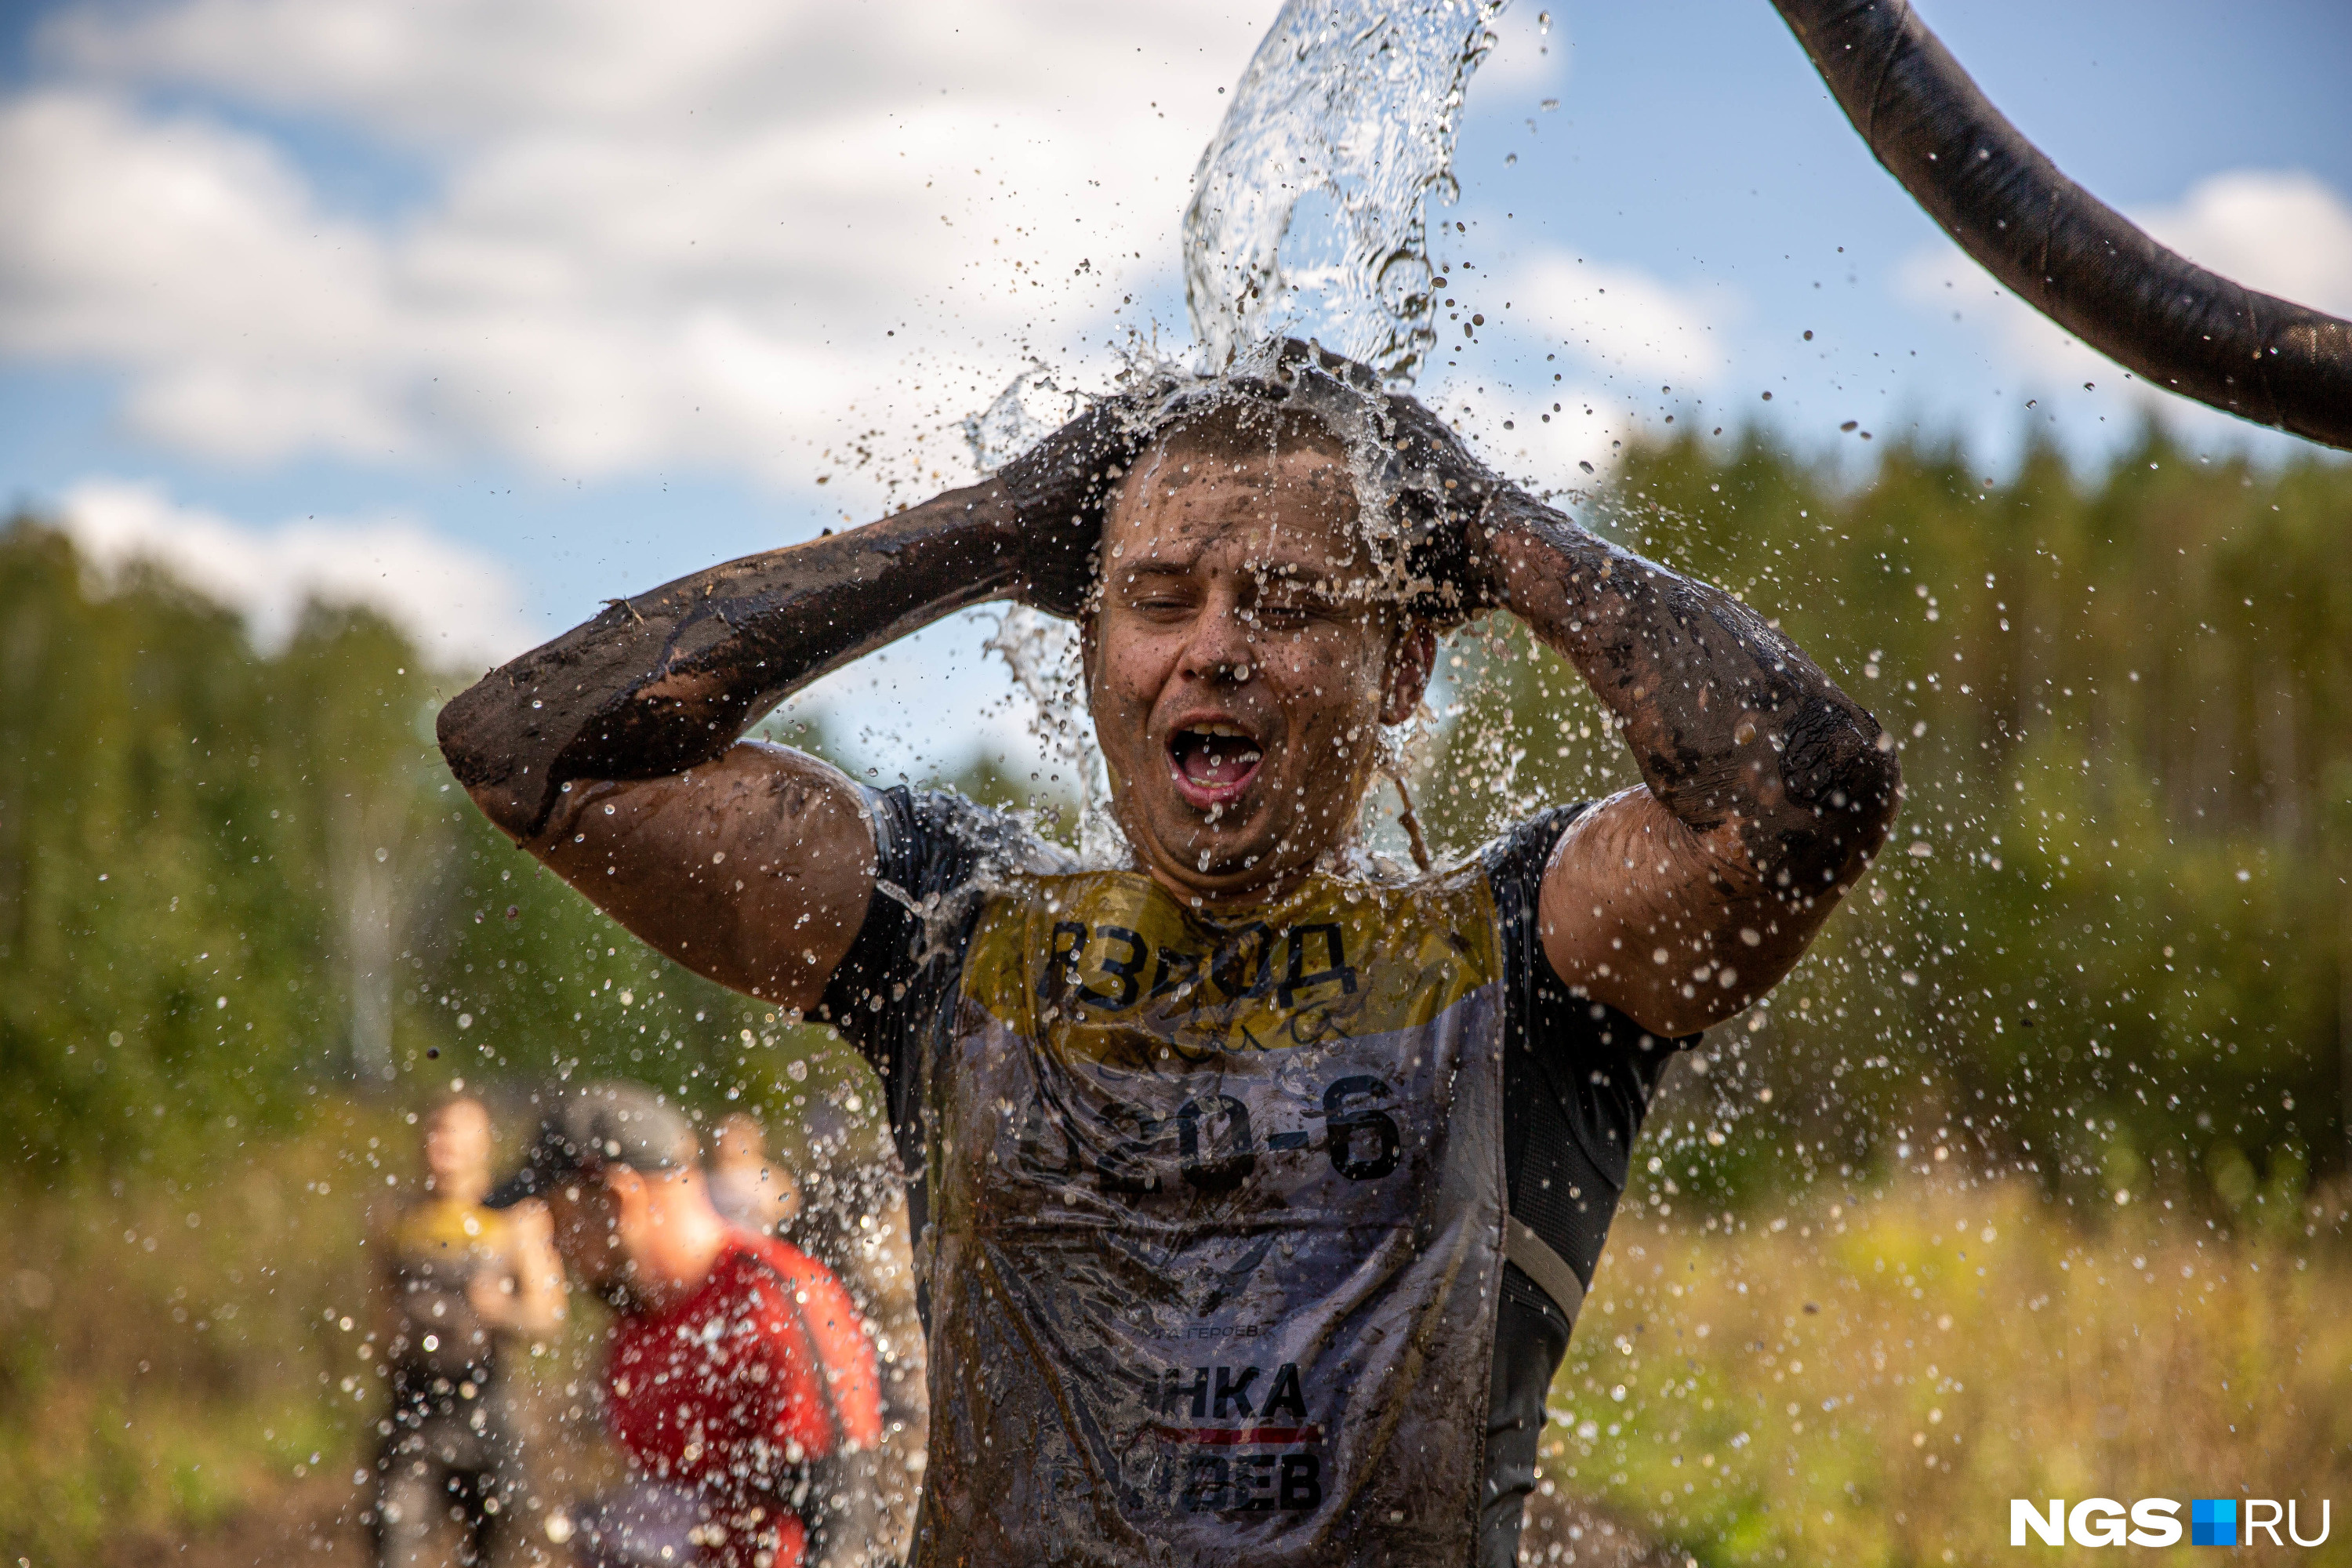 Однако самым приятным моментом для многих участников забега стал душ, когда можно было смыть всю грязь и наконец выдохнуть, ведь финалисты доказали, что они — герои